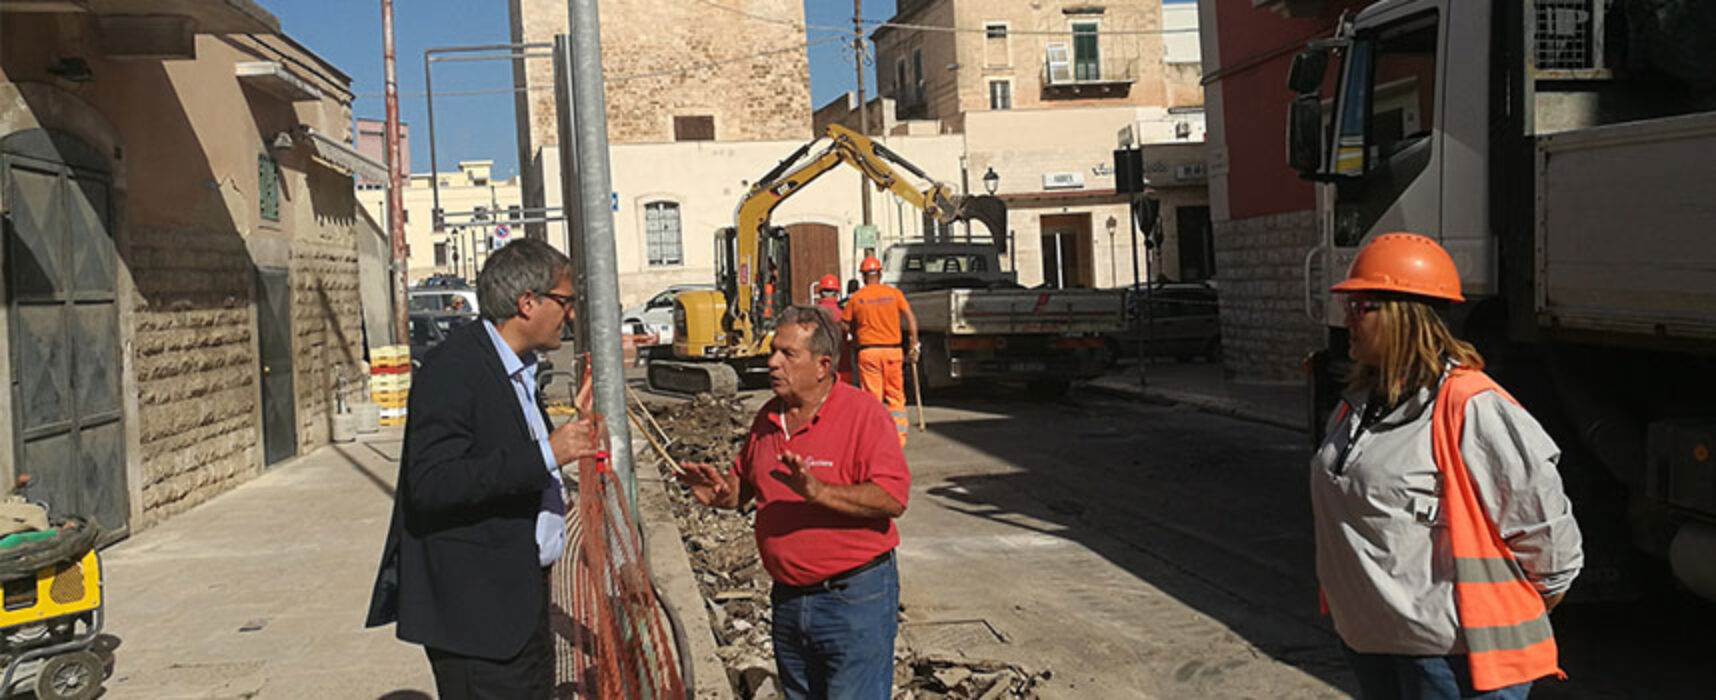 Miglioramento reti idriche urbane, Angarano: “Dopo via Alighieri anche Corso Umberto” / FOTO